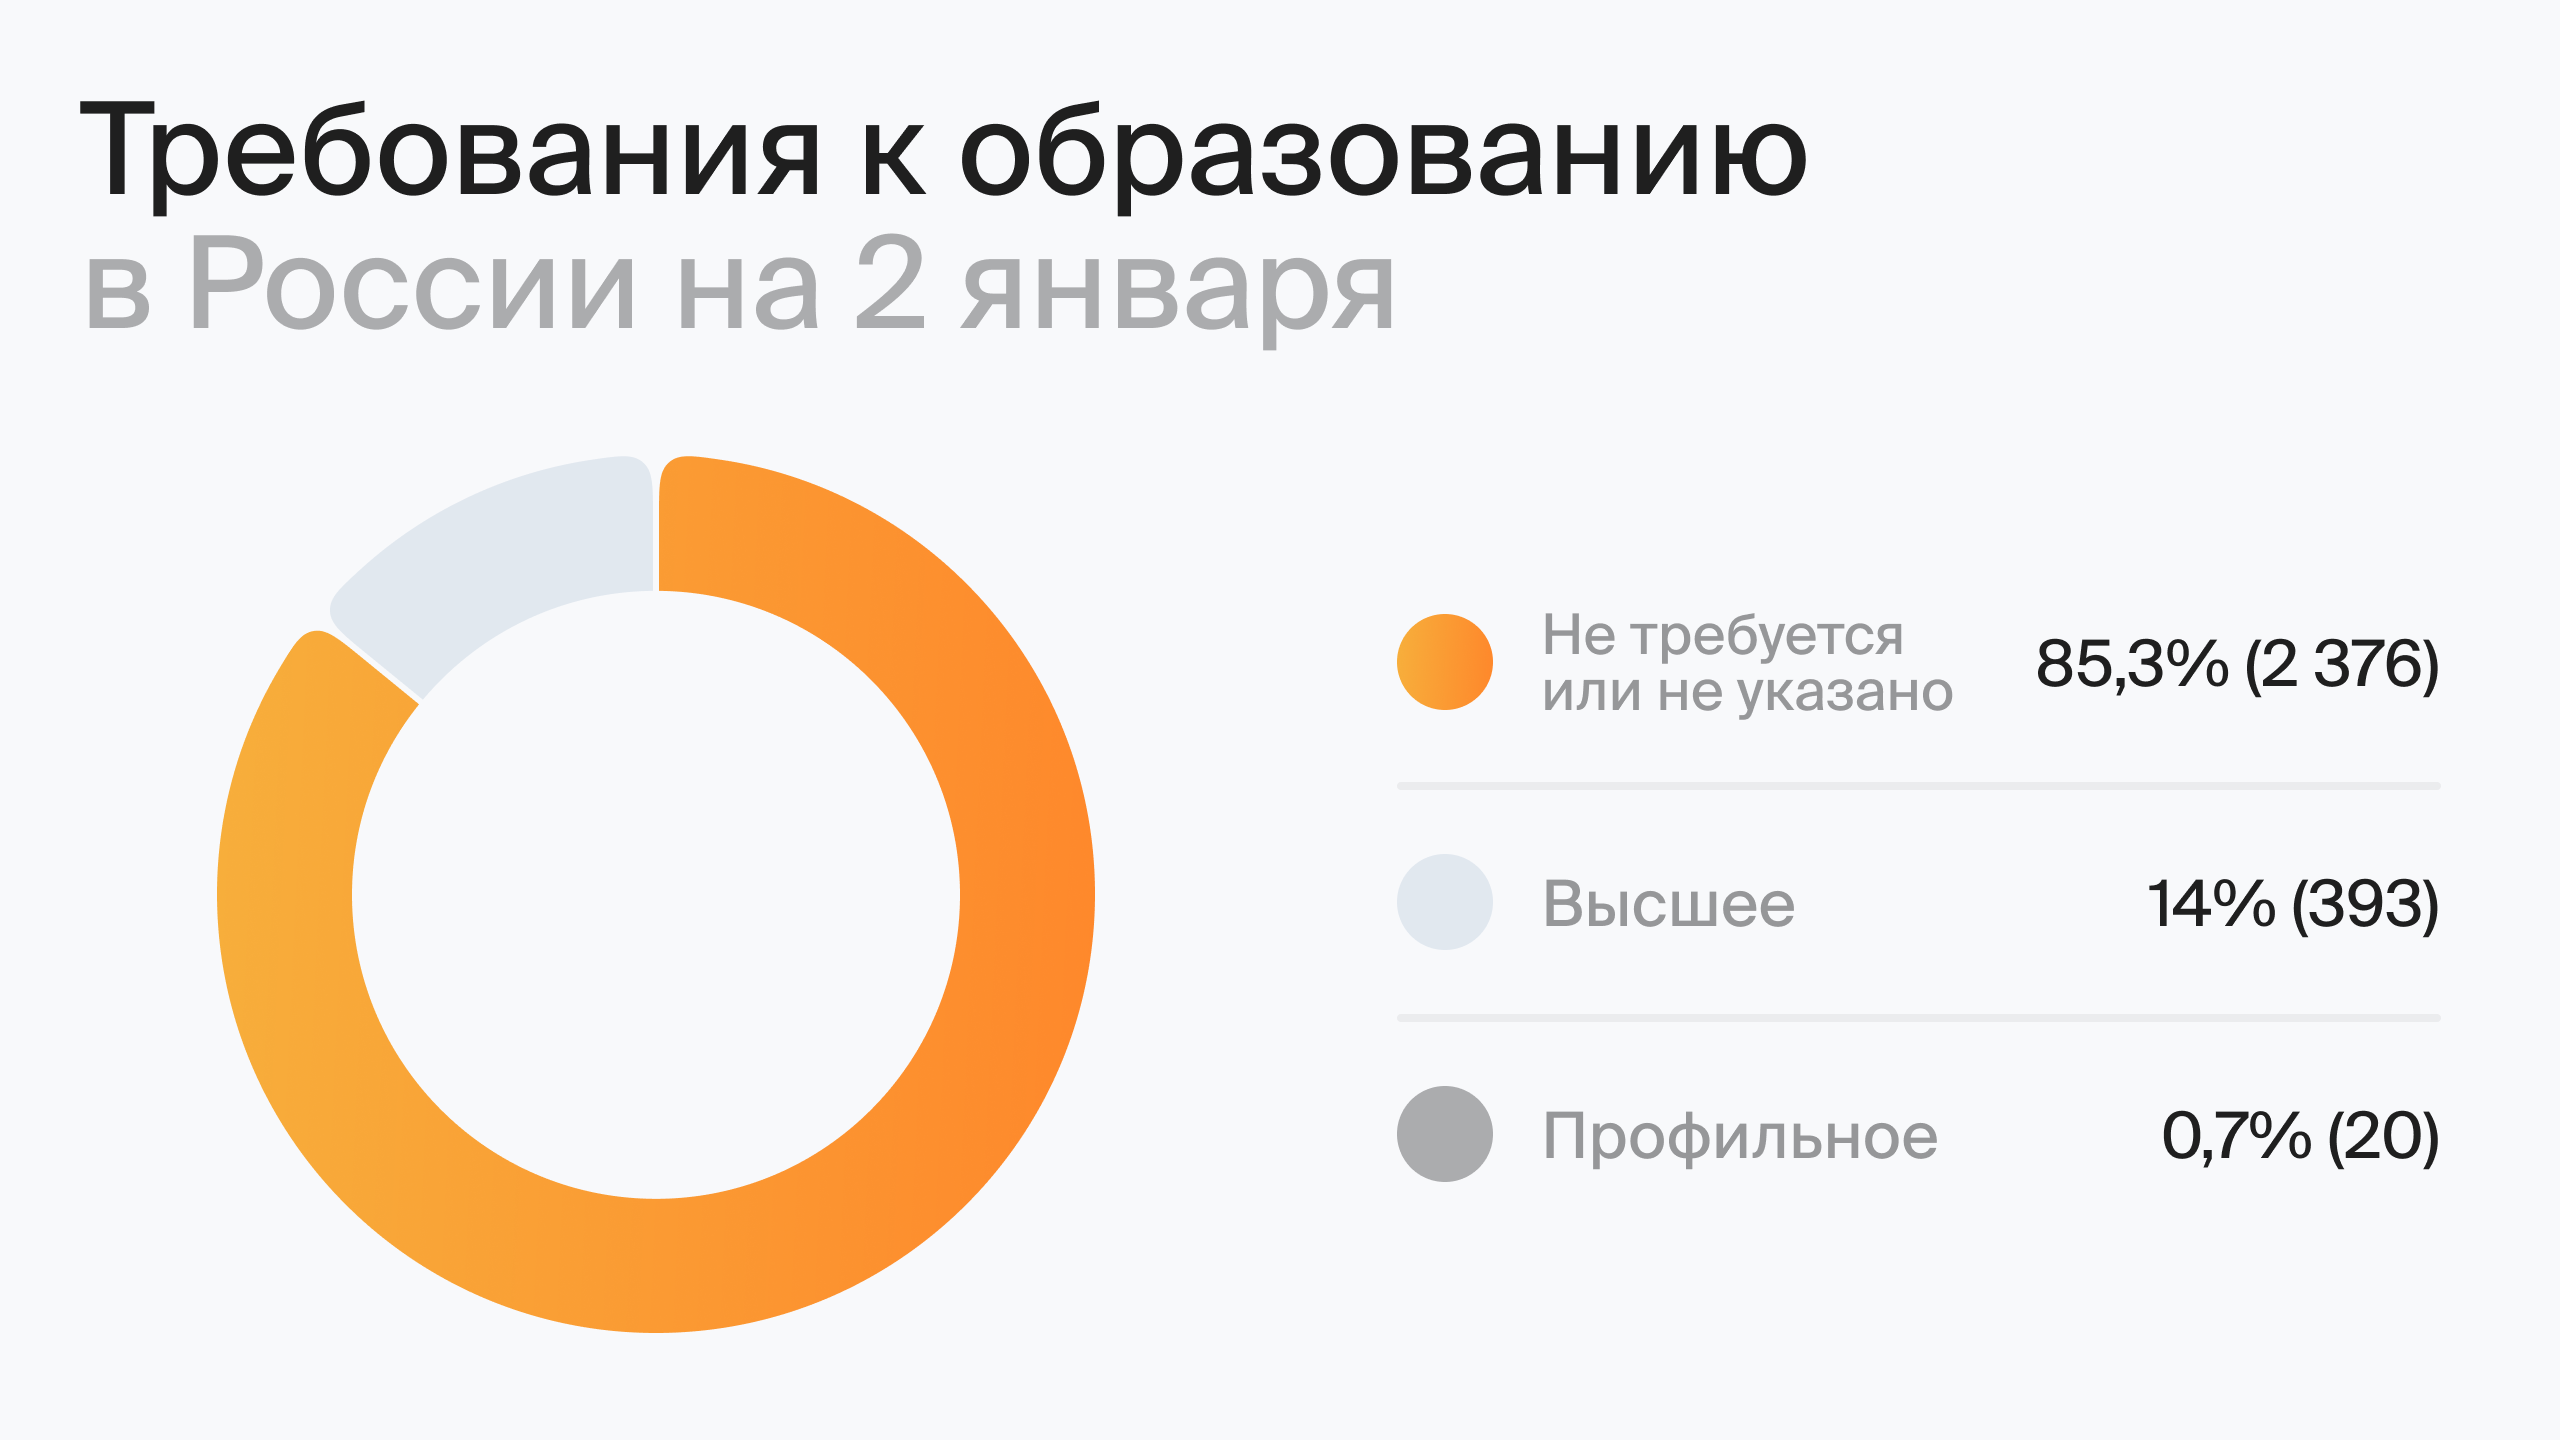 Требования к образованию в России на 2 января (по данным hh.ru)